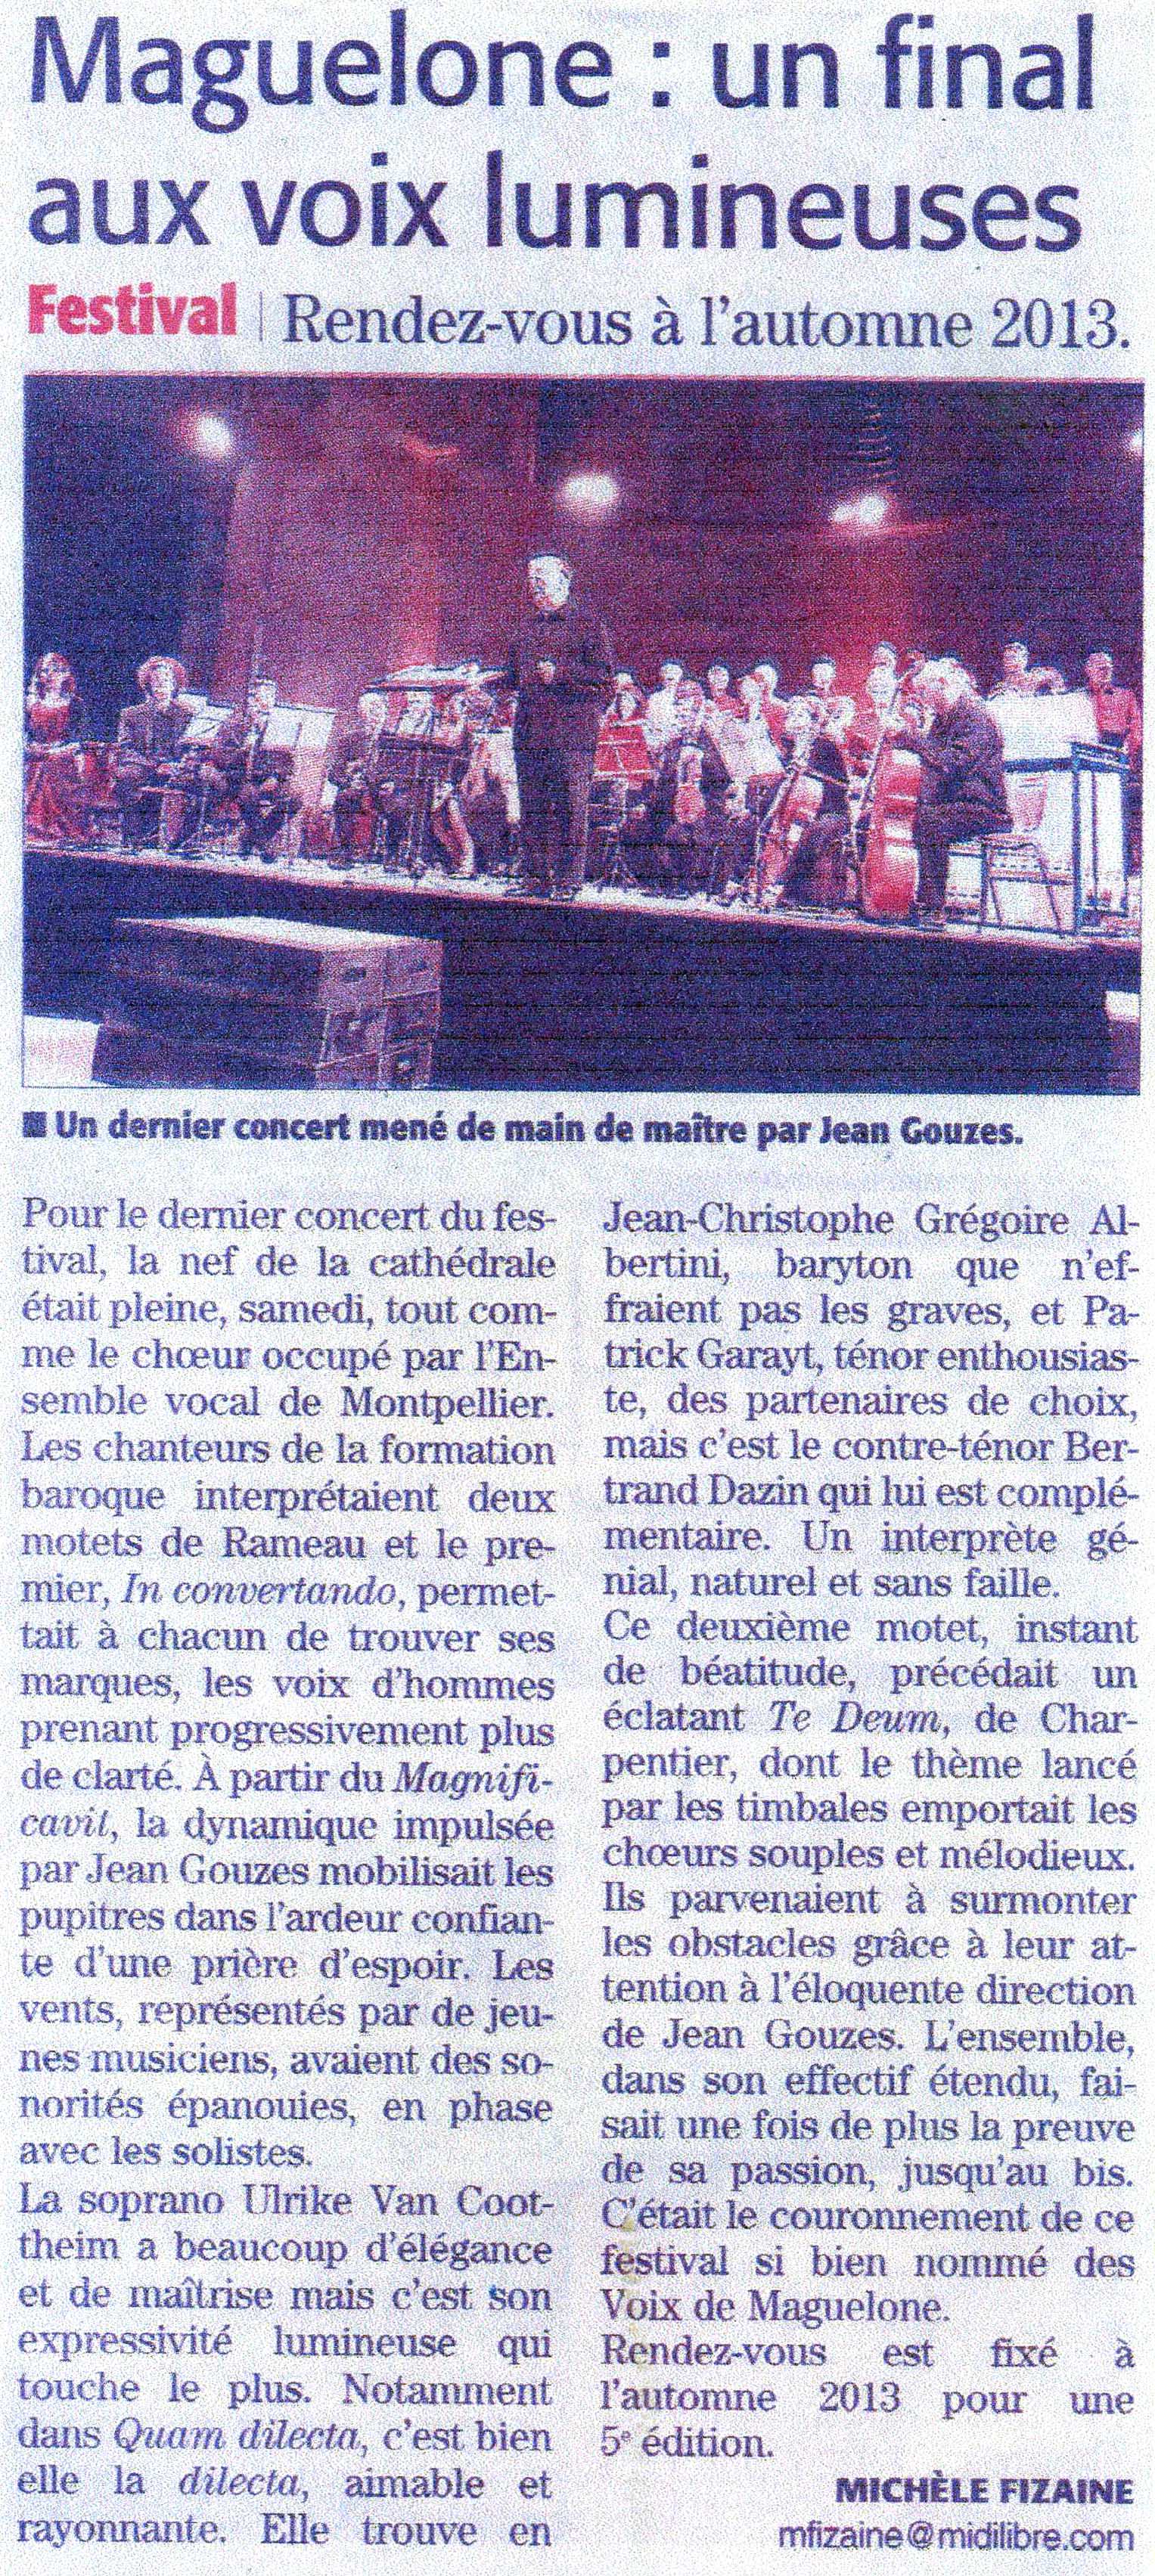 6 octobre 2012 Concert Rameau et Charpentier à la Cathédrale de Villeneuve-lès-Maguelone